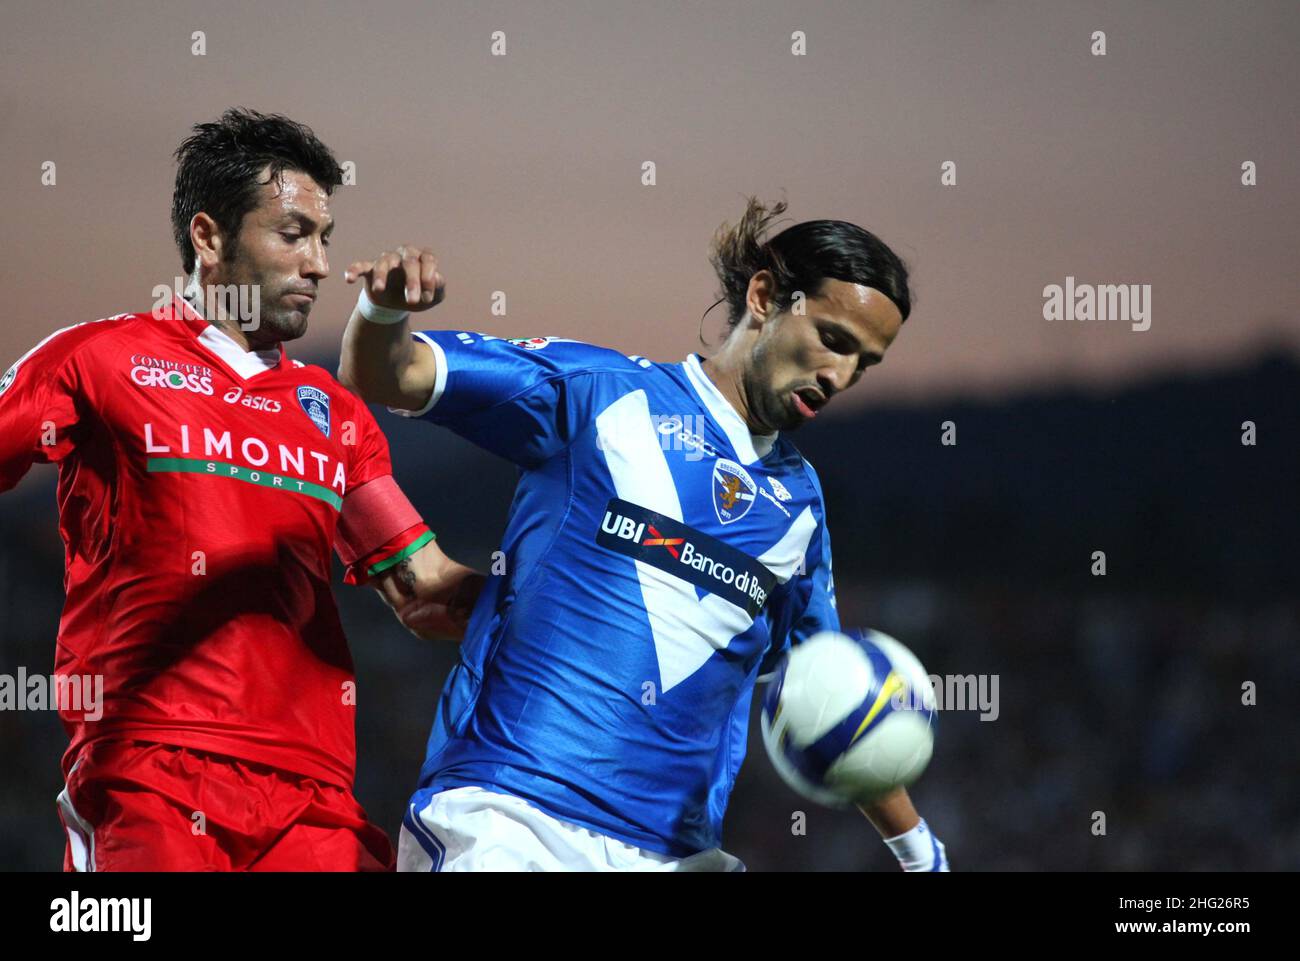 Victor Hugo Mareco and Antonio Busce' during Brescia vs Empoli at The Stadio Mario Rigamonti in Italy  Stock Photo